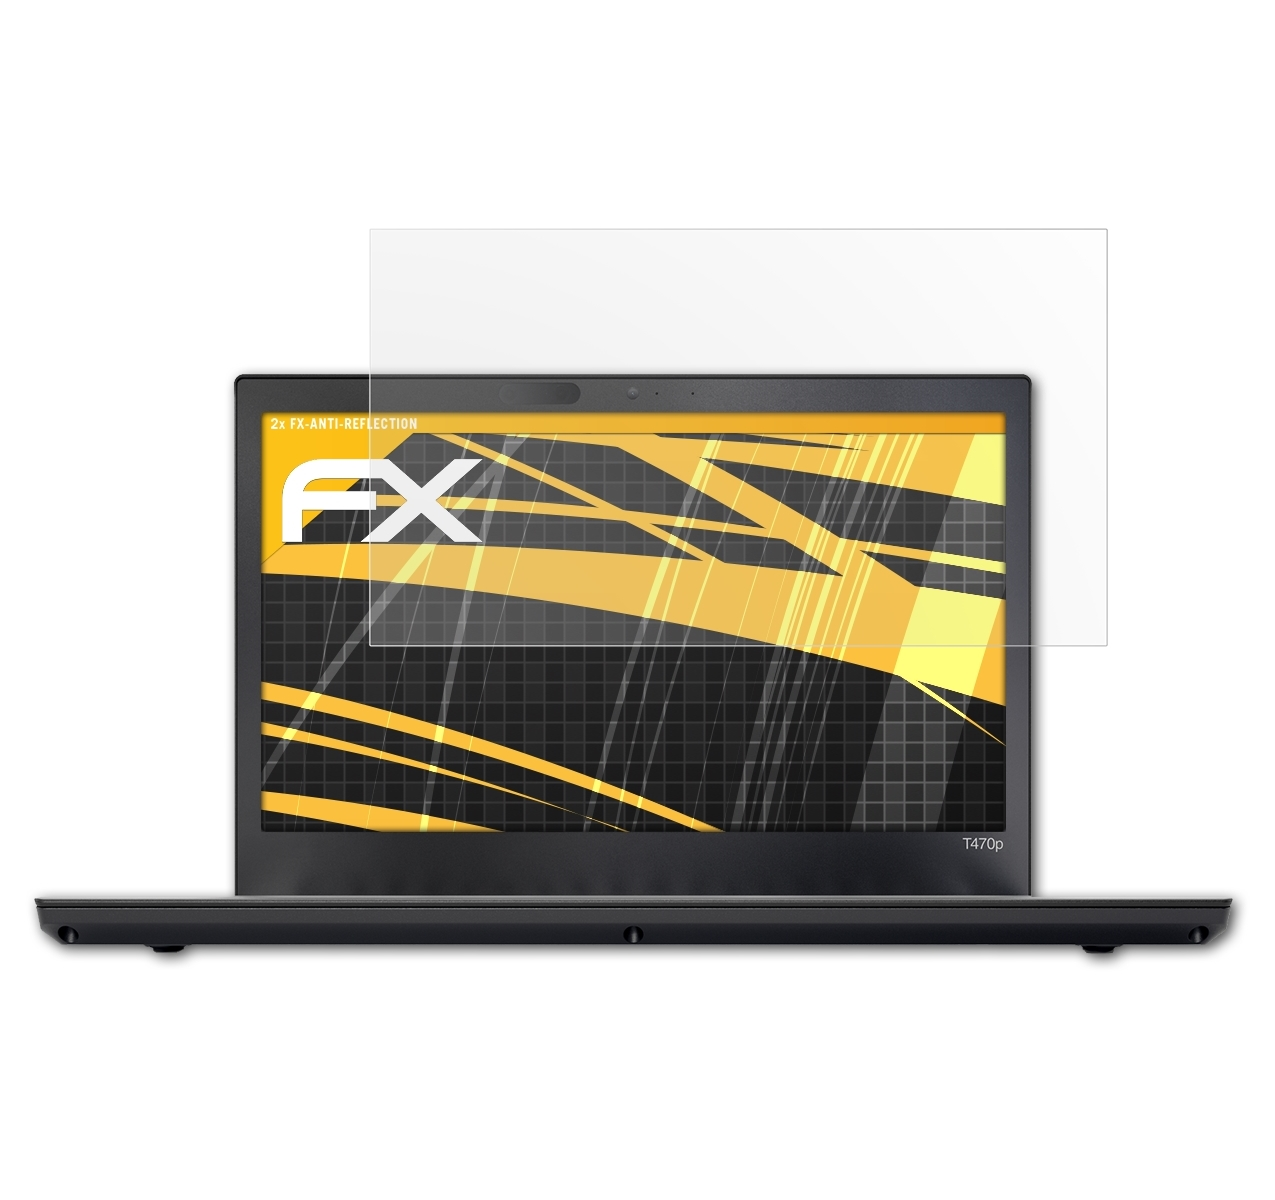 ATFOLIX 2x Displayschutz(für FX-Antireflex ThinkPad T470P) Lenovo